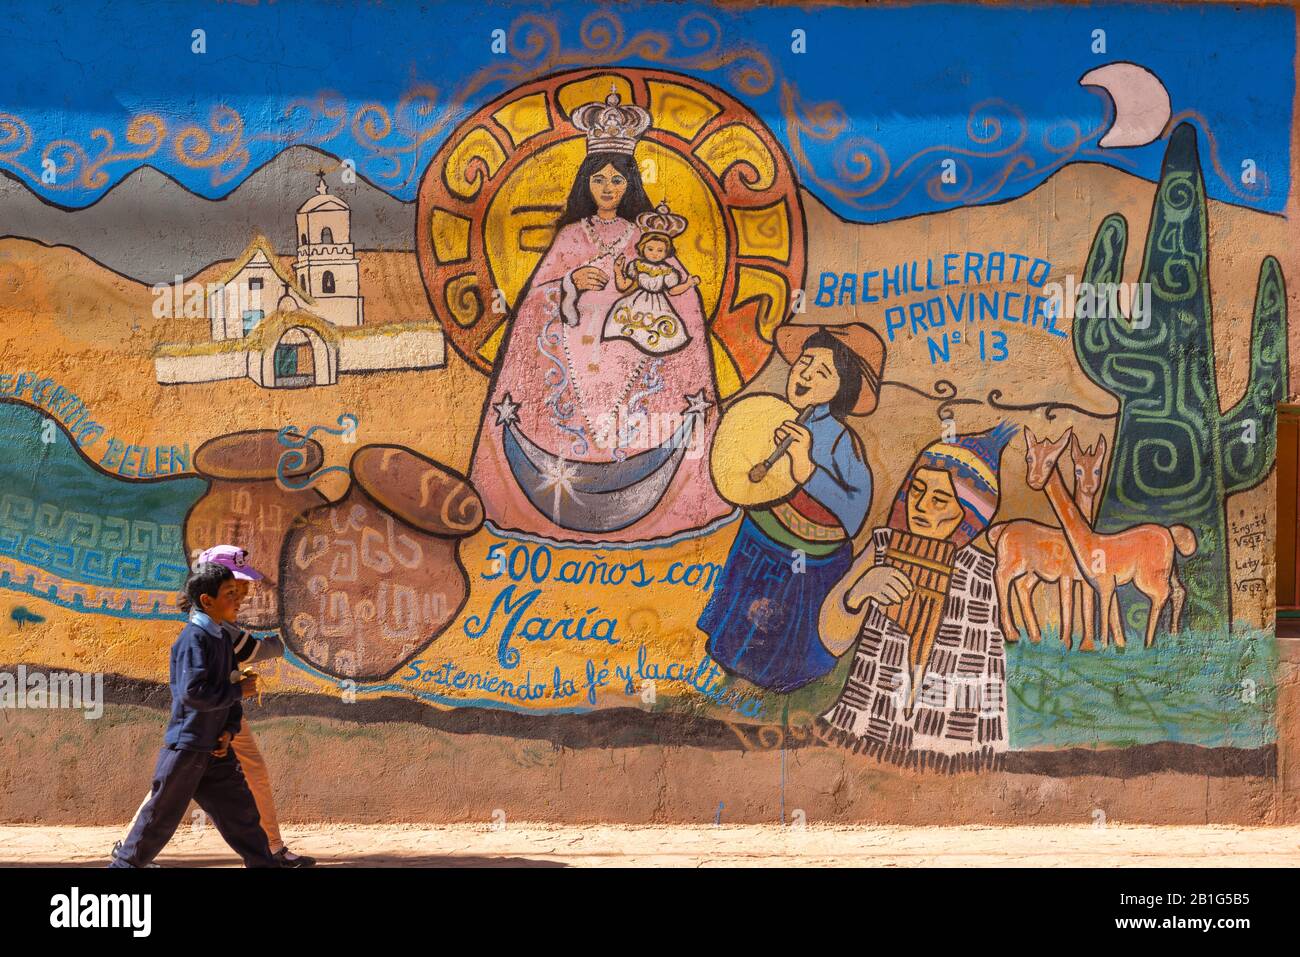 Grafitti dans la petite ville de Suques sur la route nationale 52, haute altitude Andes, Puna désert, Province de Jujuy, NW Argentine, Amérique latine Banque D'Images